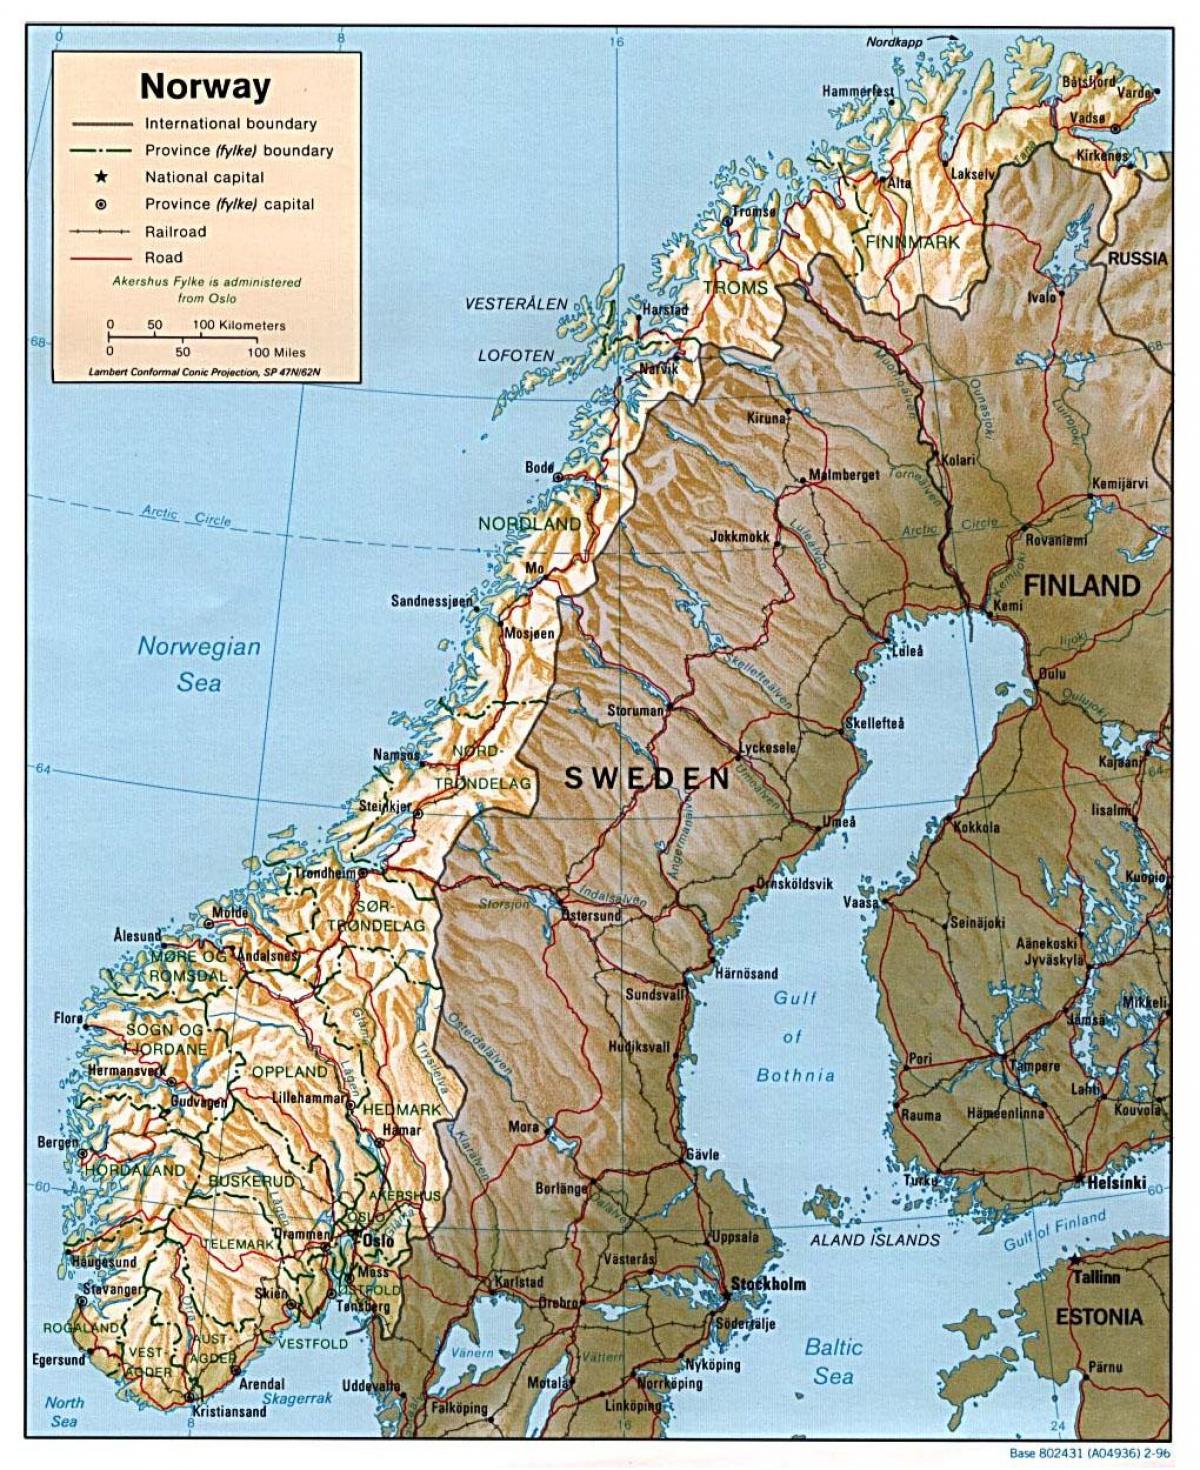 մանրամասն քարտեզը Նորվեգիայի քաղաքների հետ